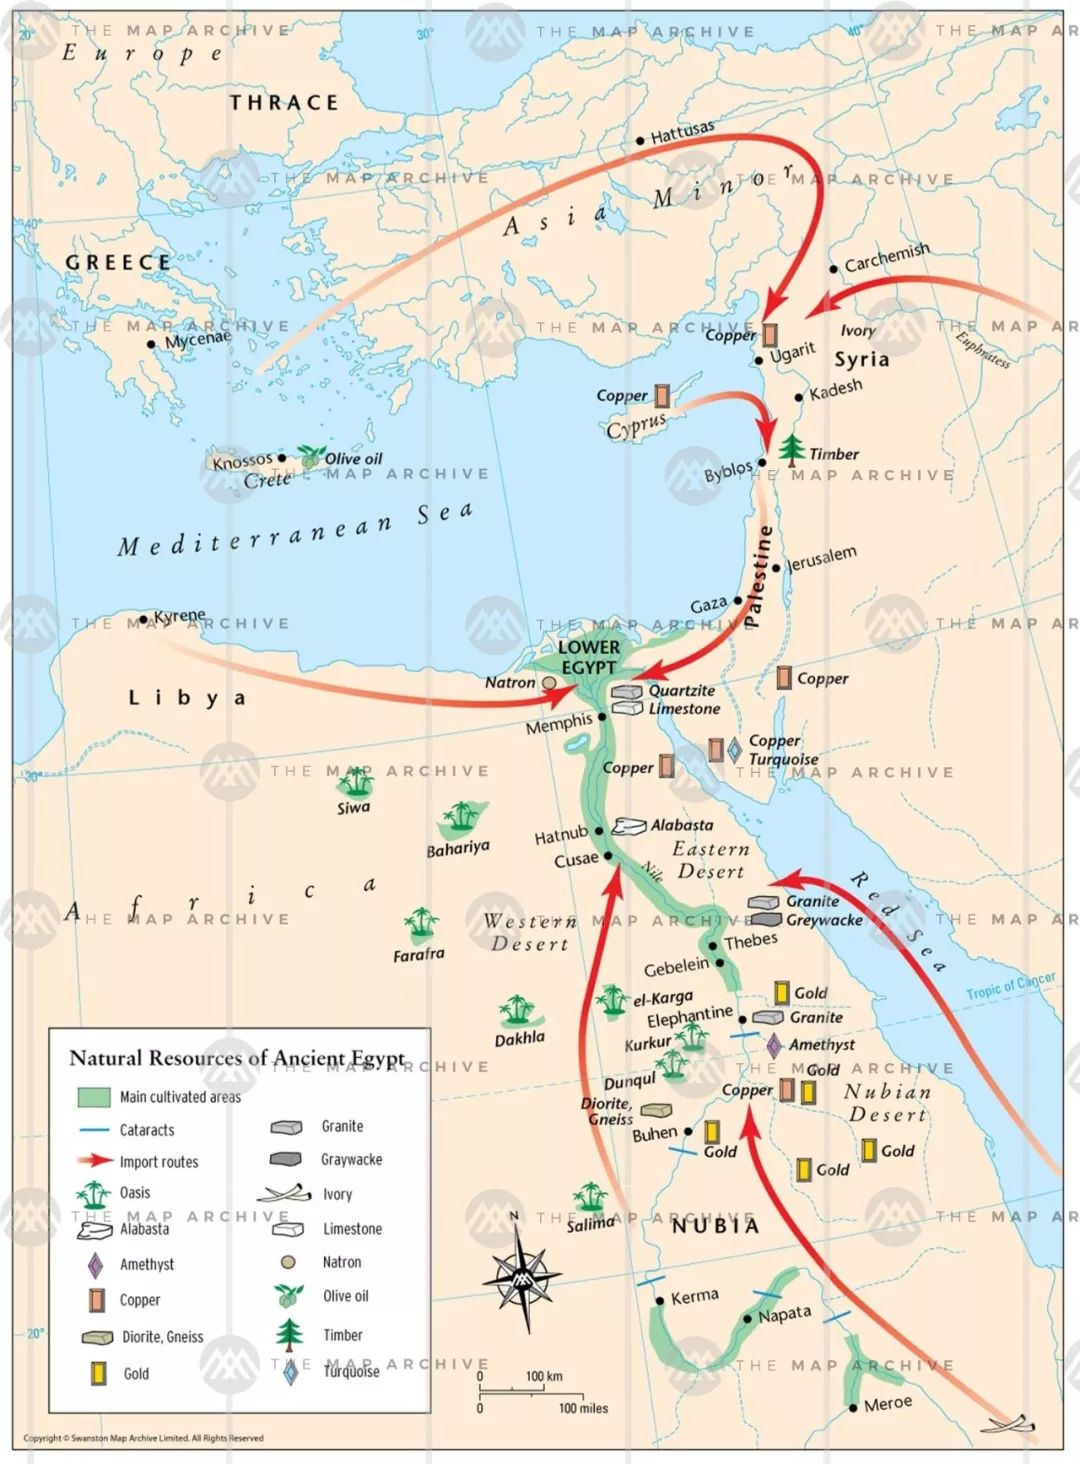 近东地区的资源分布和埃及的进口路线图片